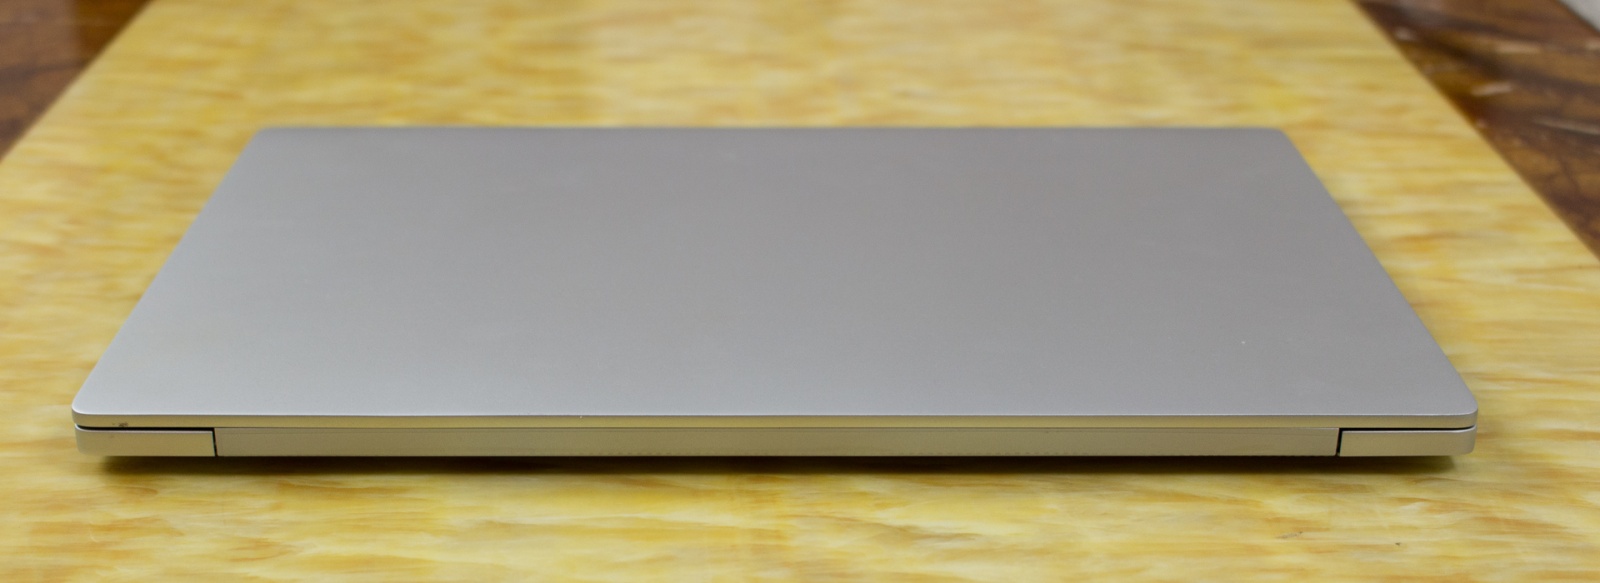 Xiaomi Mi Air 13 Laptop — еще один отличный китайский ноутбук, совершенно непохожий на Macbook - 4